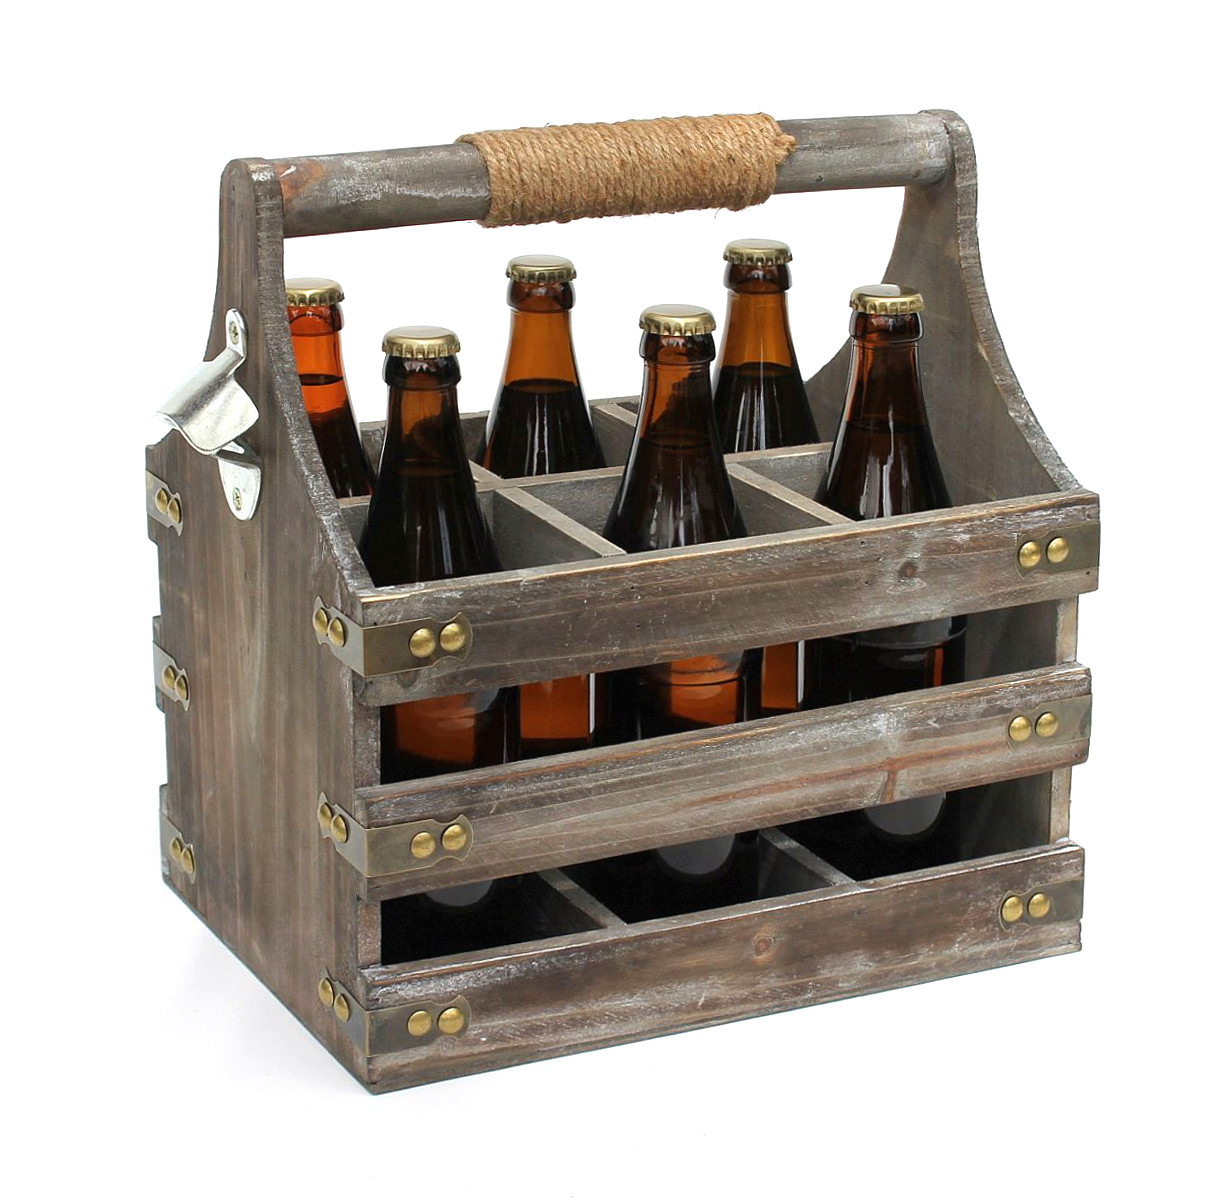 DanDiBo Männerhandtasche Öffner Flaschenkorb Flaschenträger Flaschenöffner mit 93860 Bierträger Männergeschenke-DanDiBo Holz aus